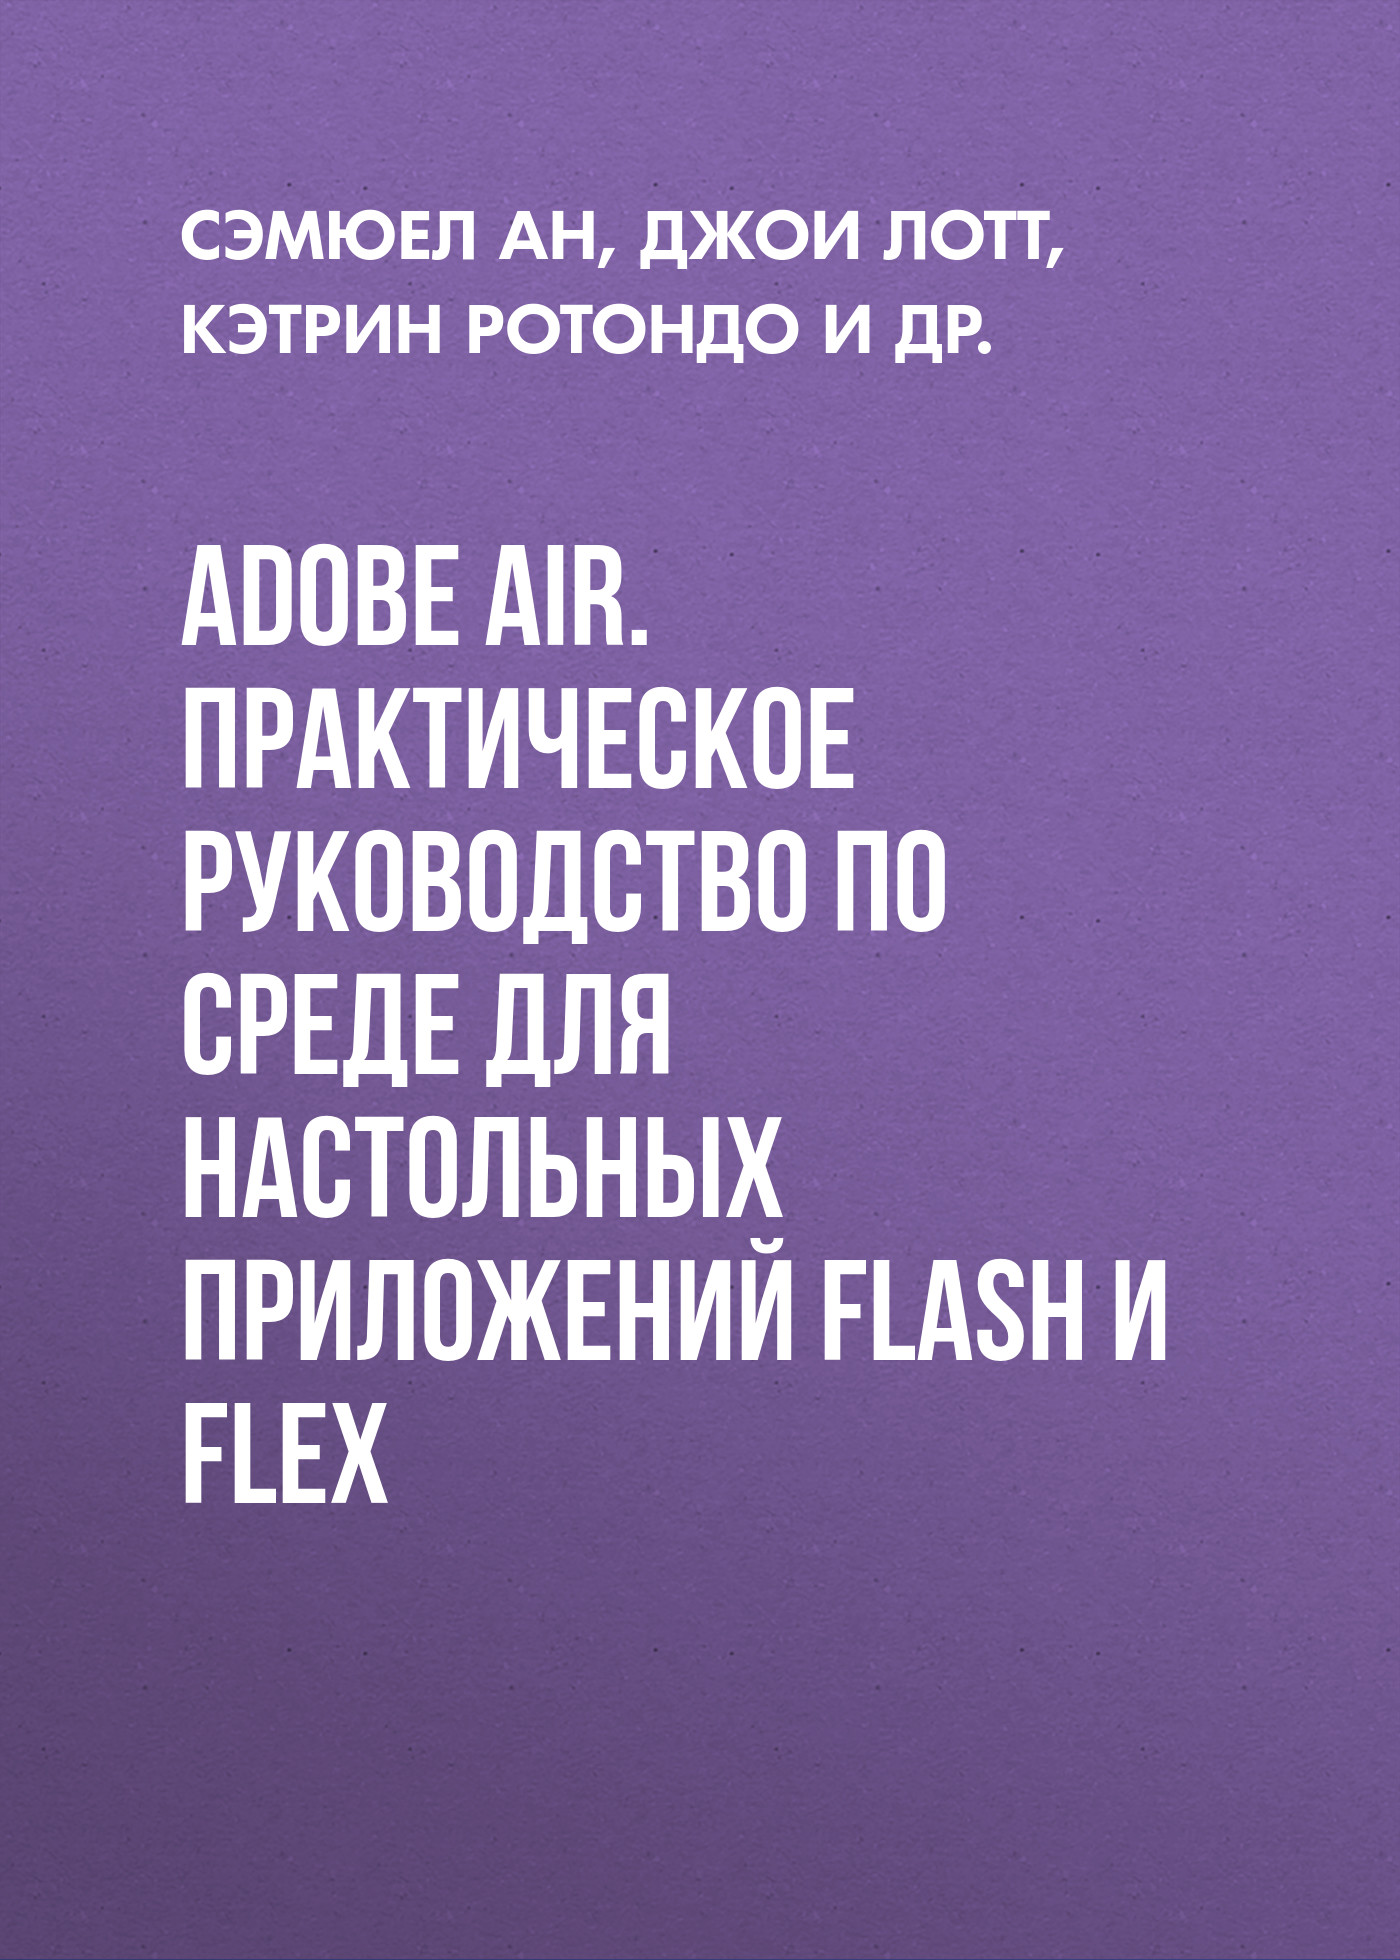 Adobe AIR.Практическое руководство по среде для настольных приложений Flash и Flex